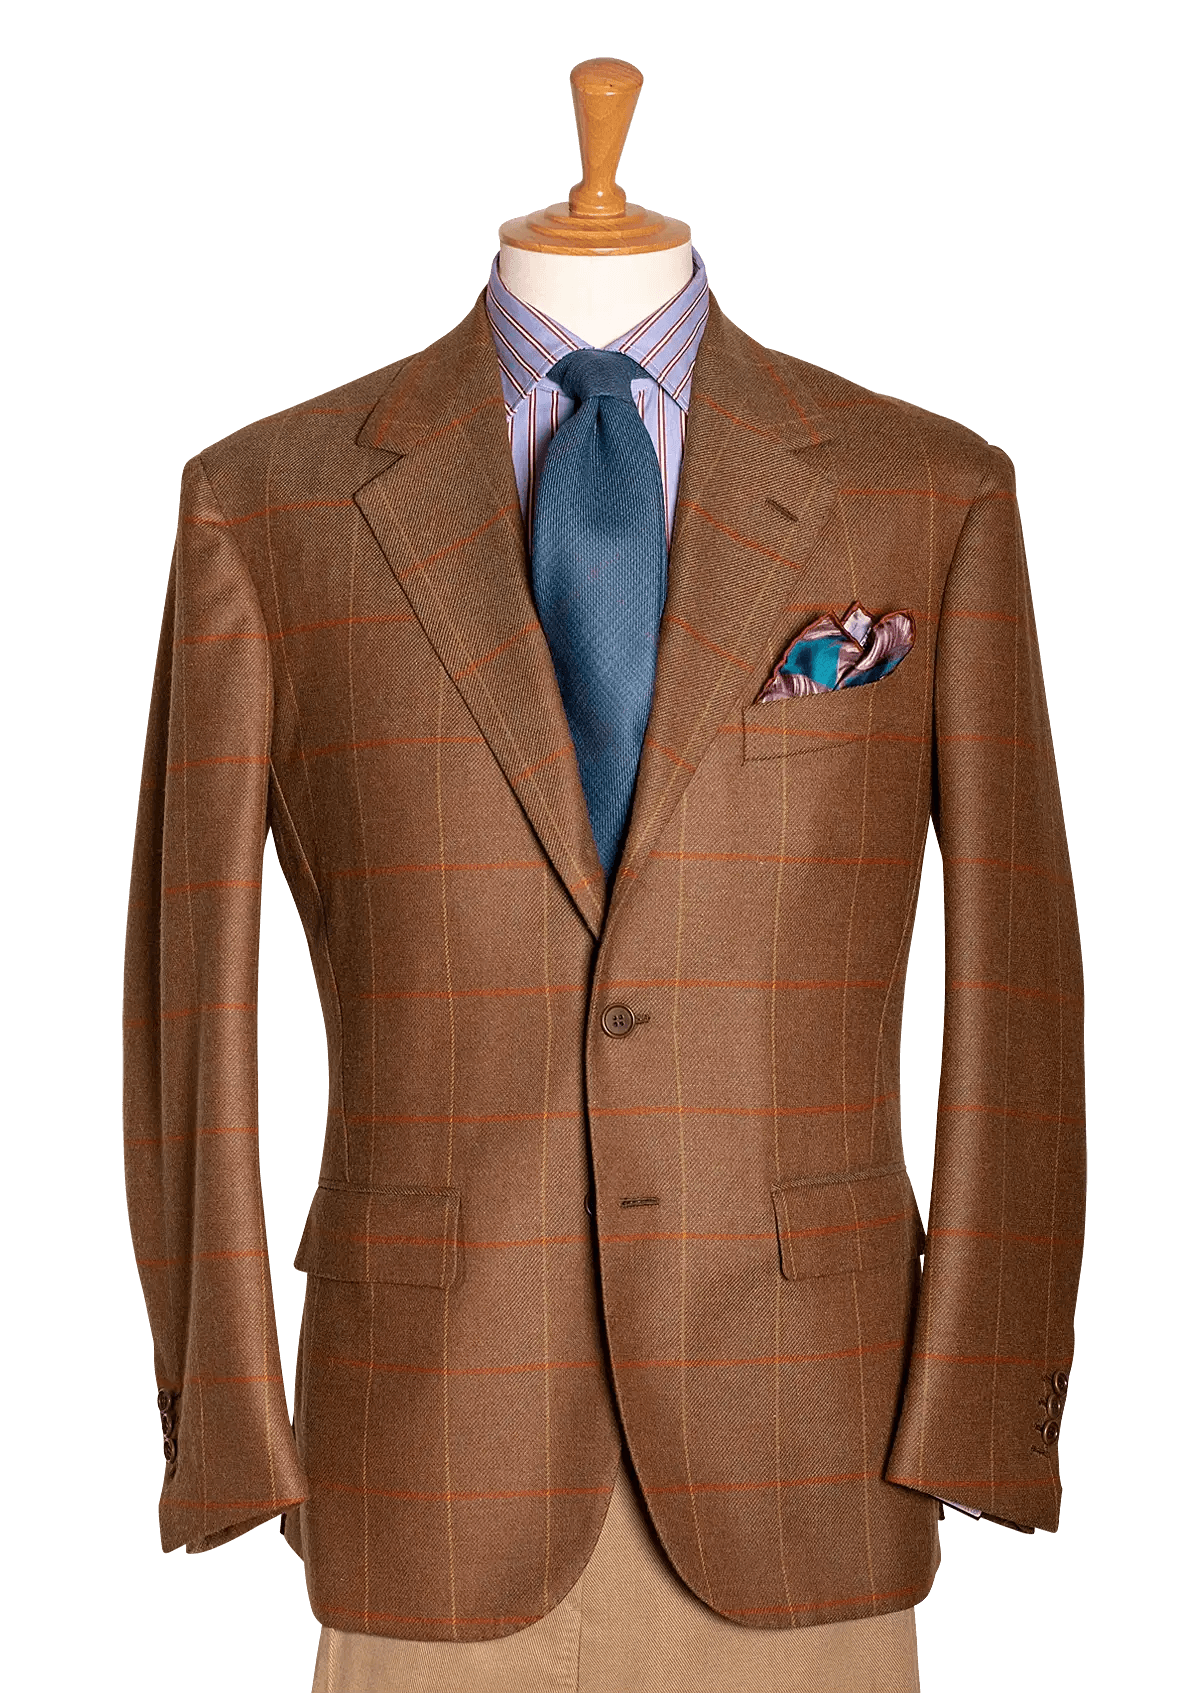 Men's Brown Sport Coat with pane design